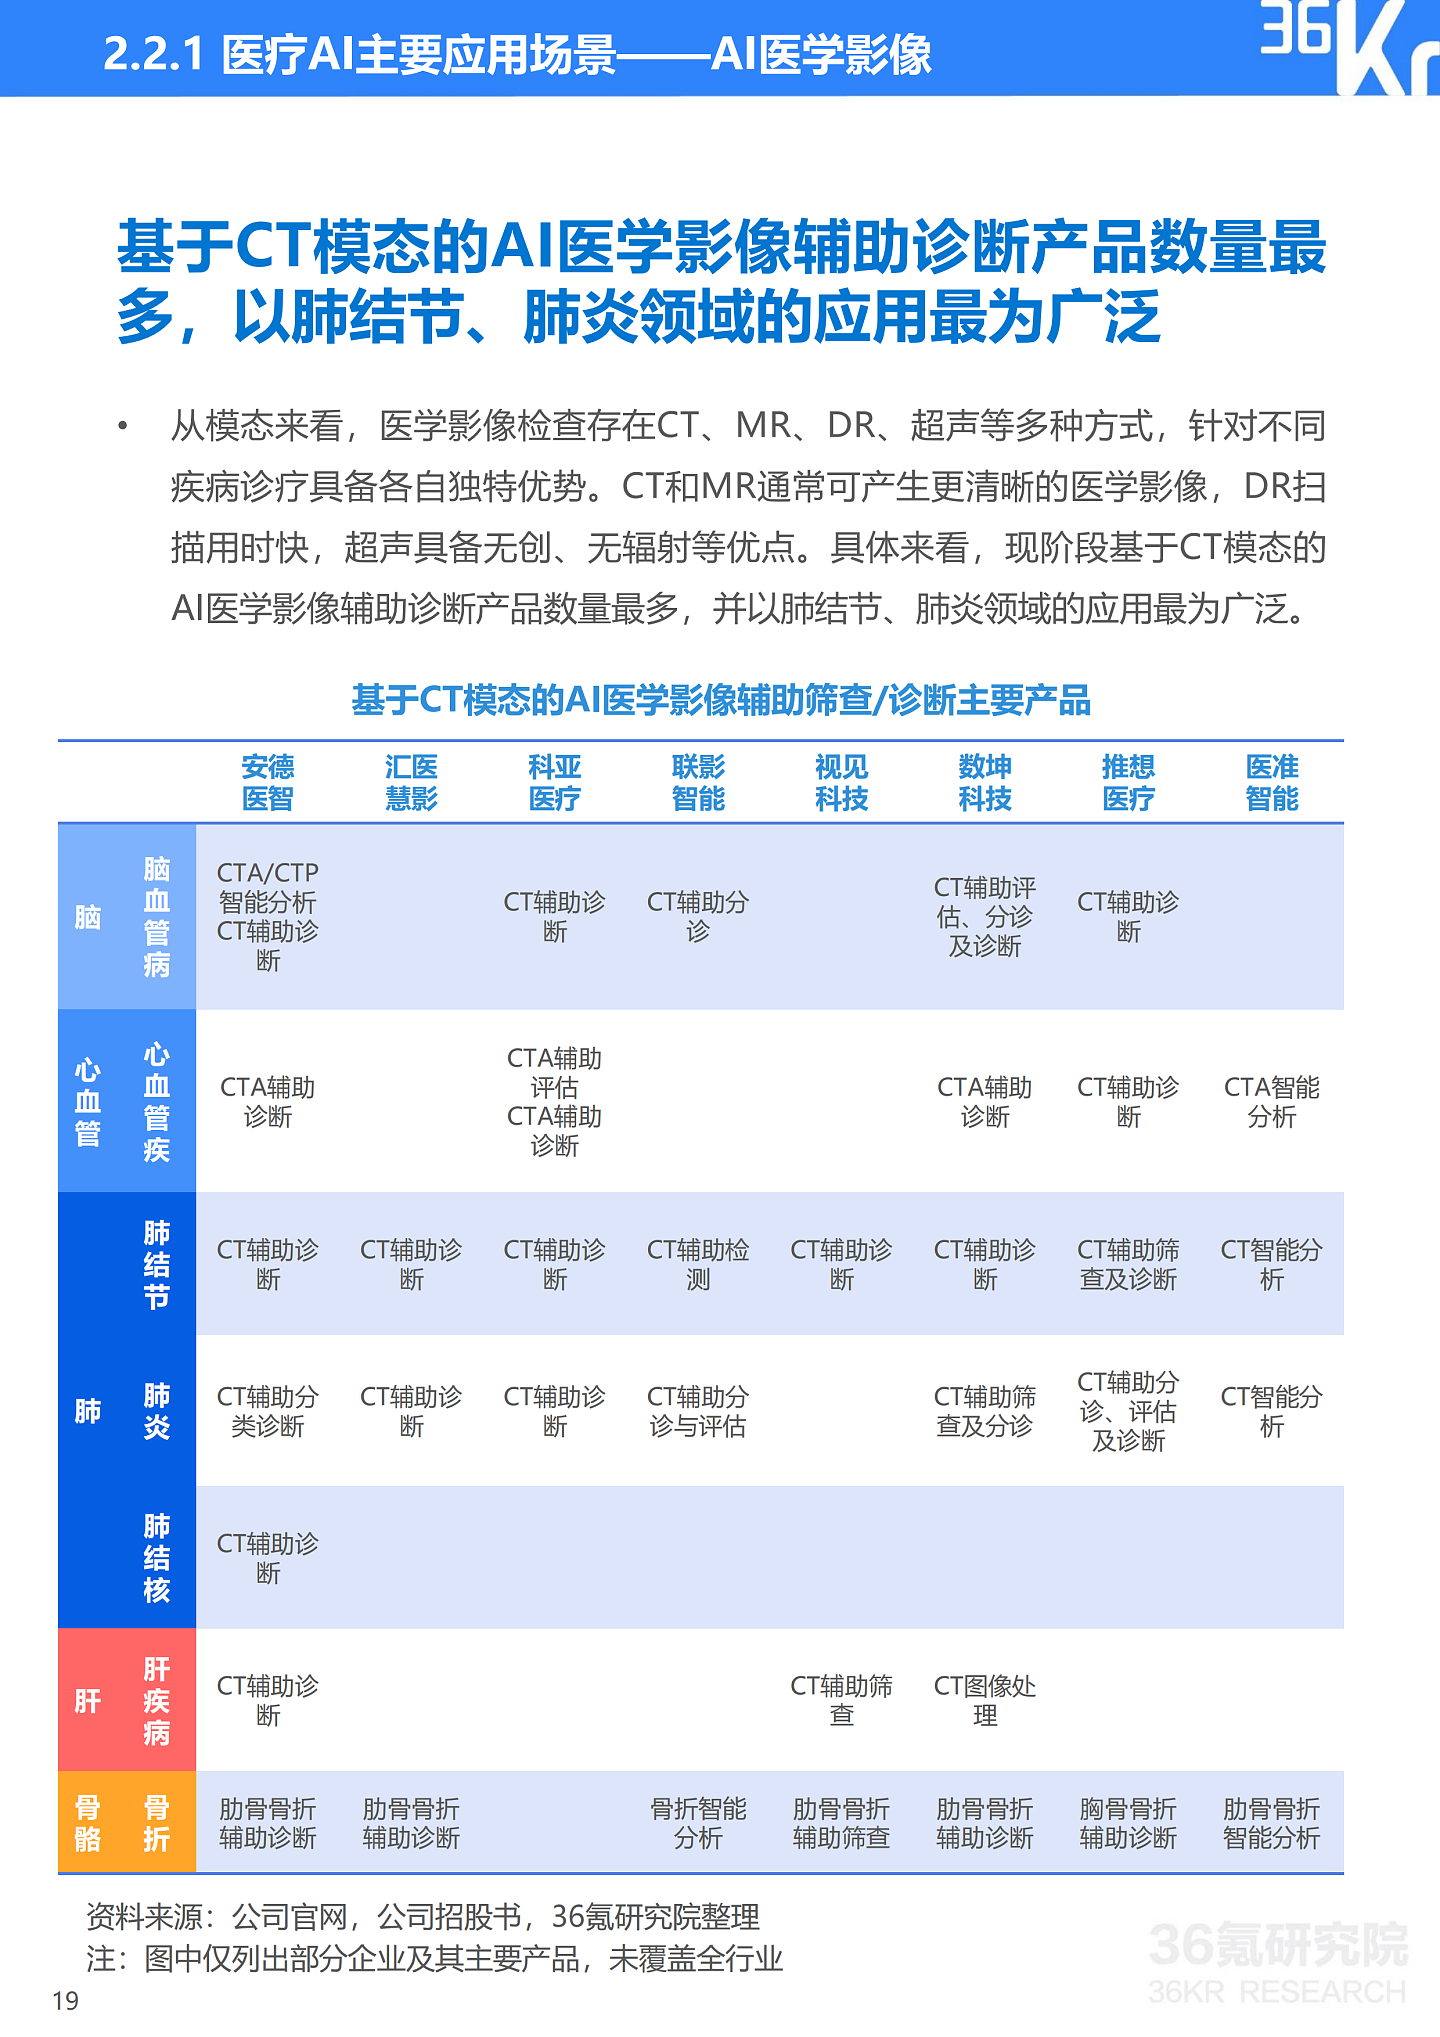 36氪研究院 | 2021年中国医疗AI行业研究报告 - 22